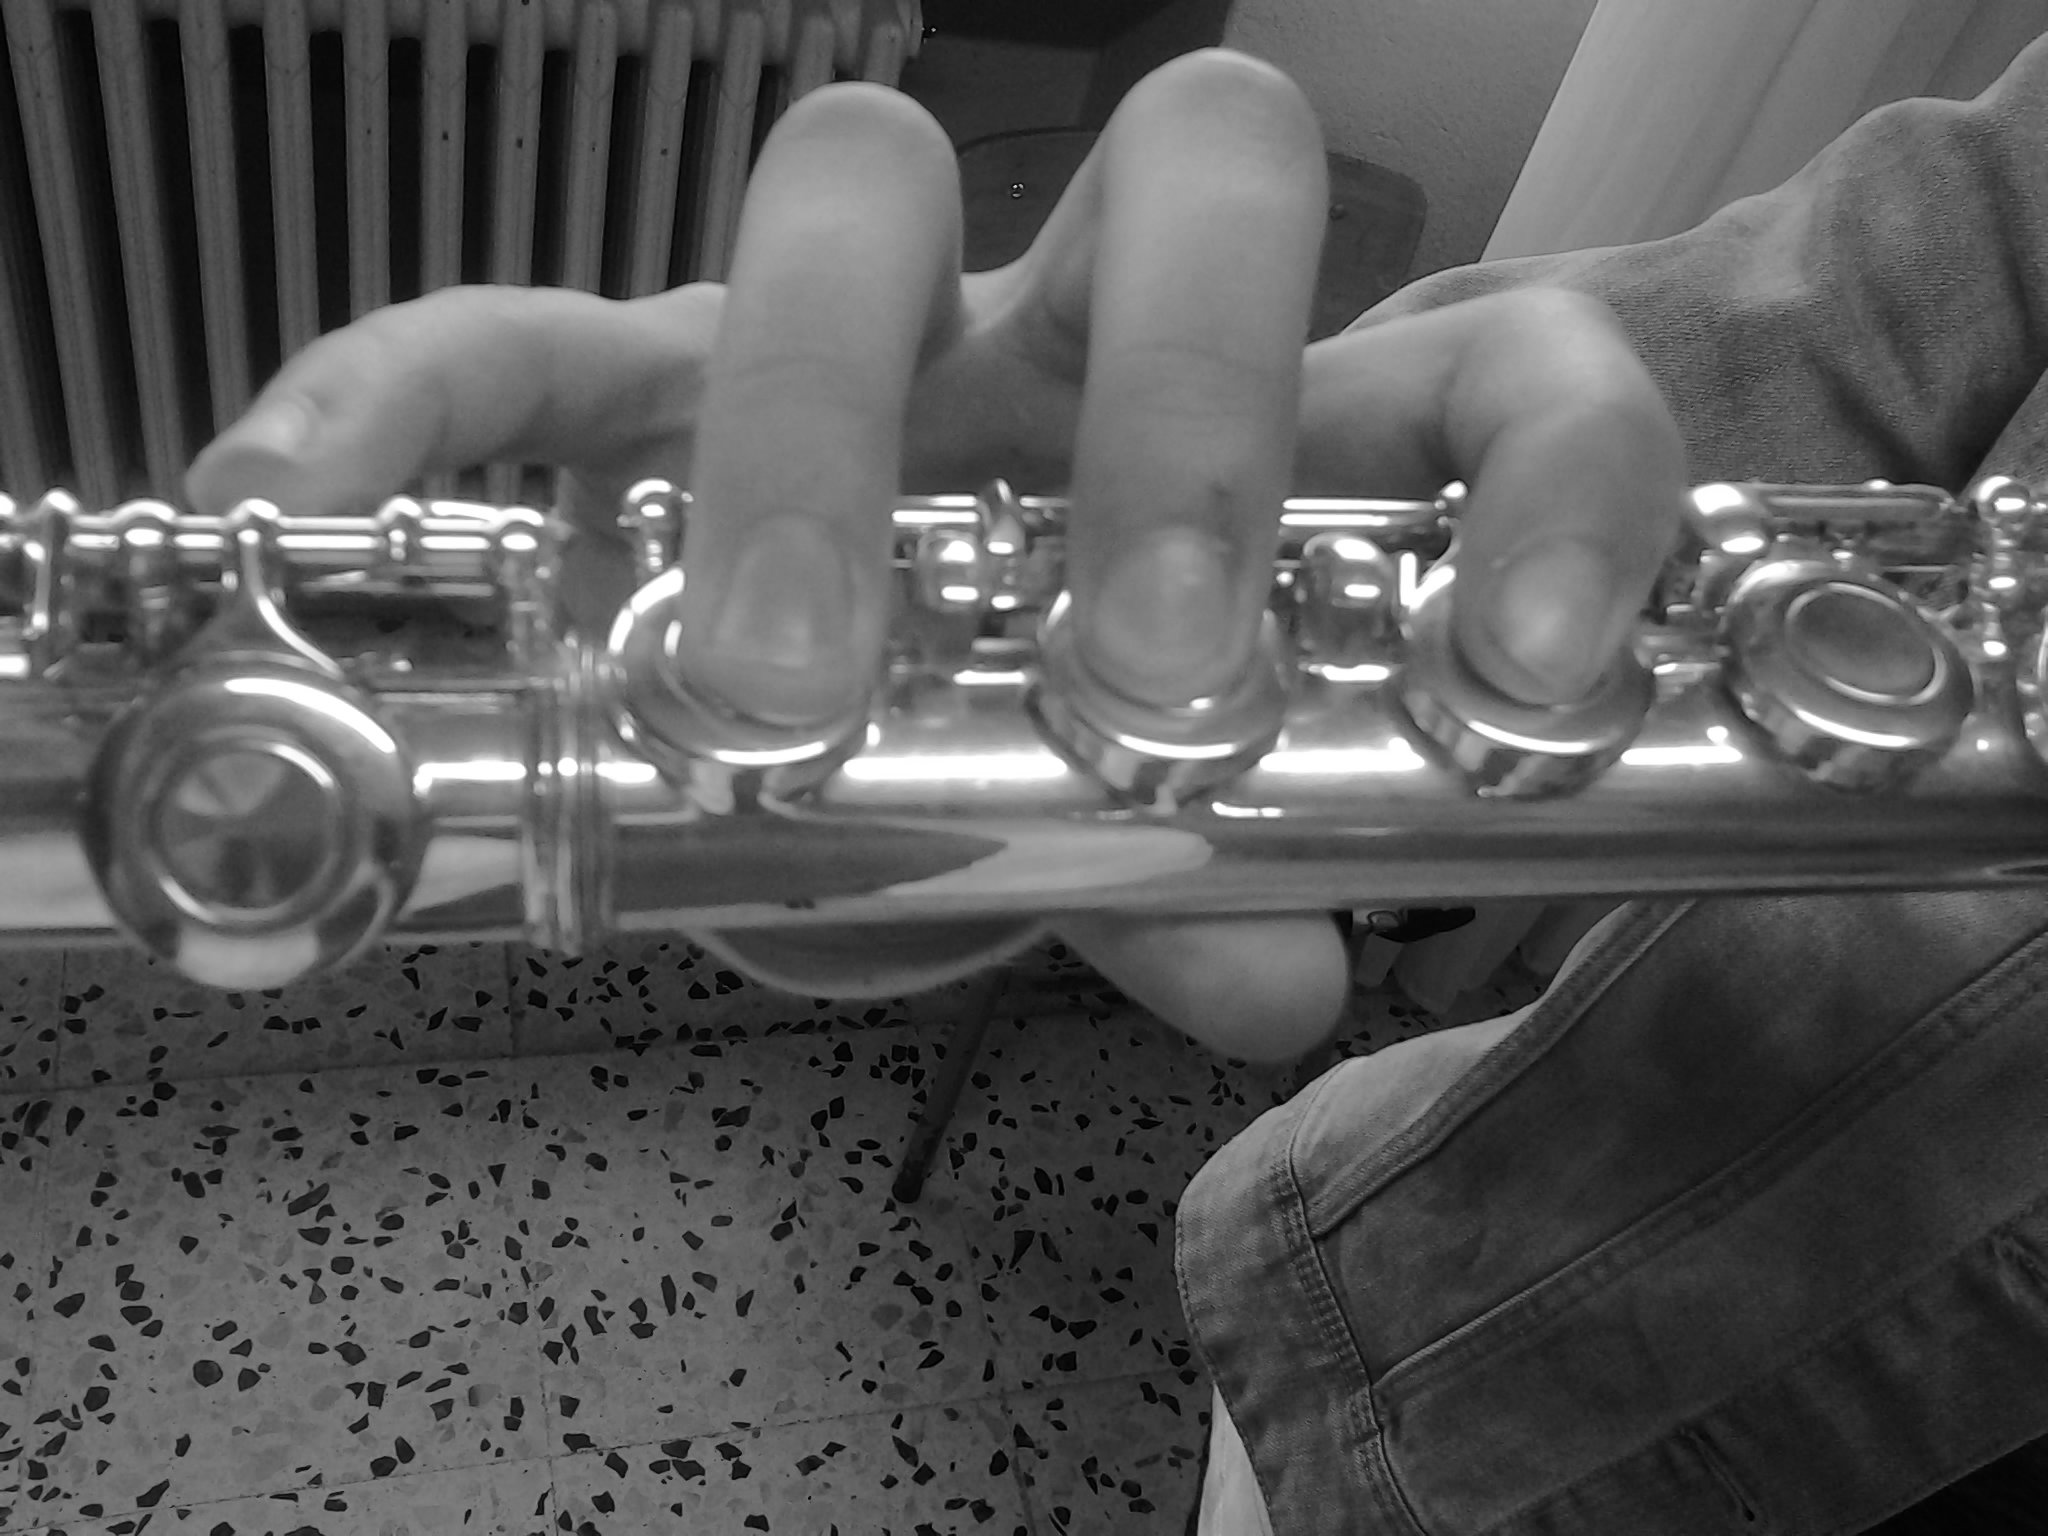 Detalle de la mano derecha del flautista